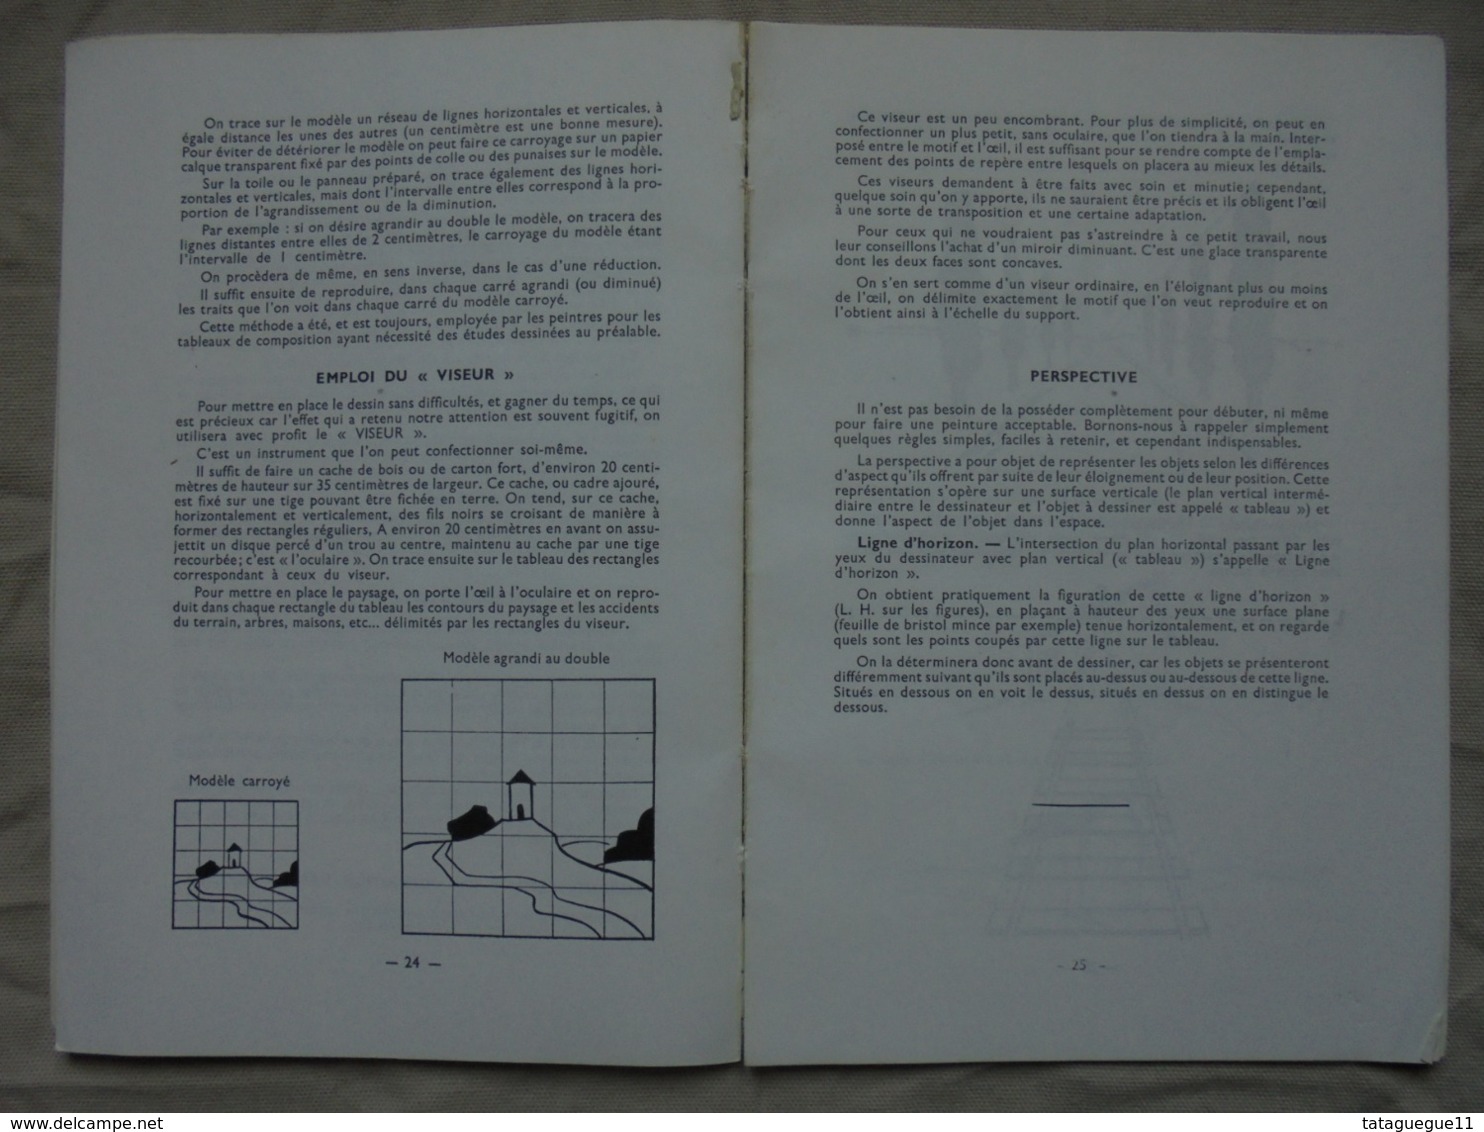 Ancien - Livre "LA PEINTURE A L'HUILE" Par R. GALOYER - LEFRANC - Années 60 - Autres & Non Classés